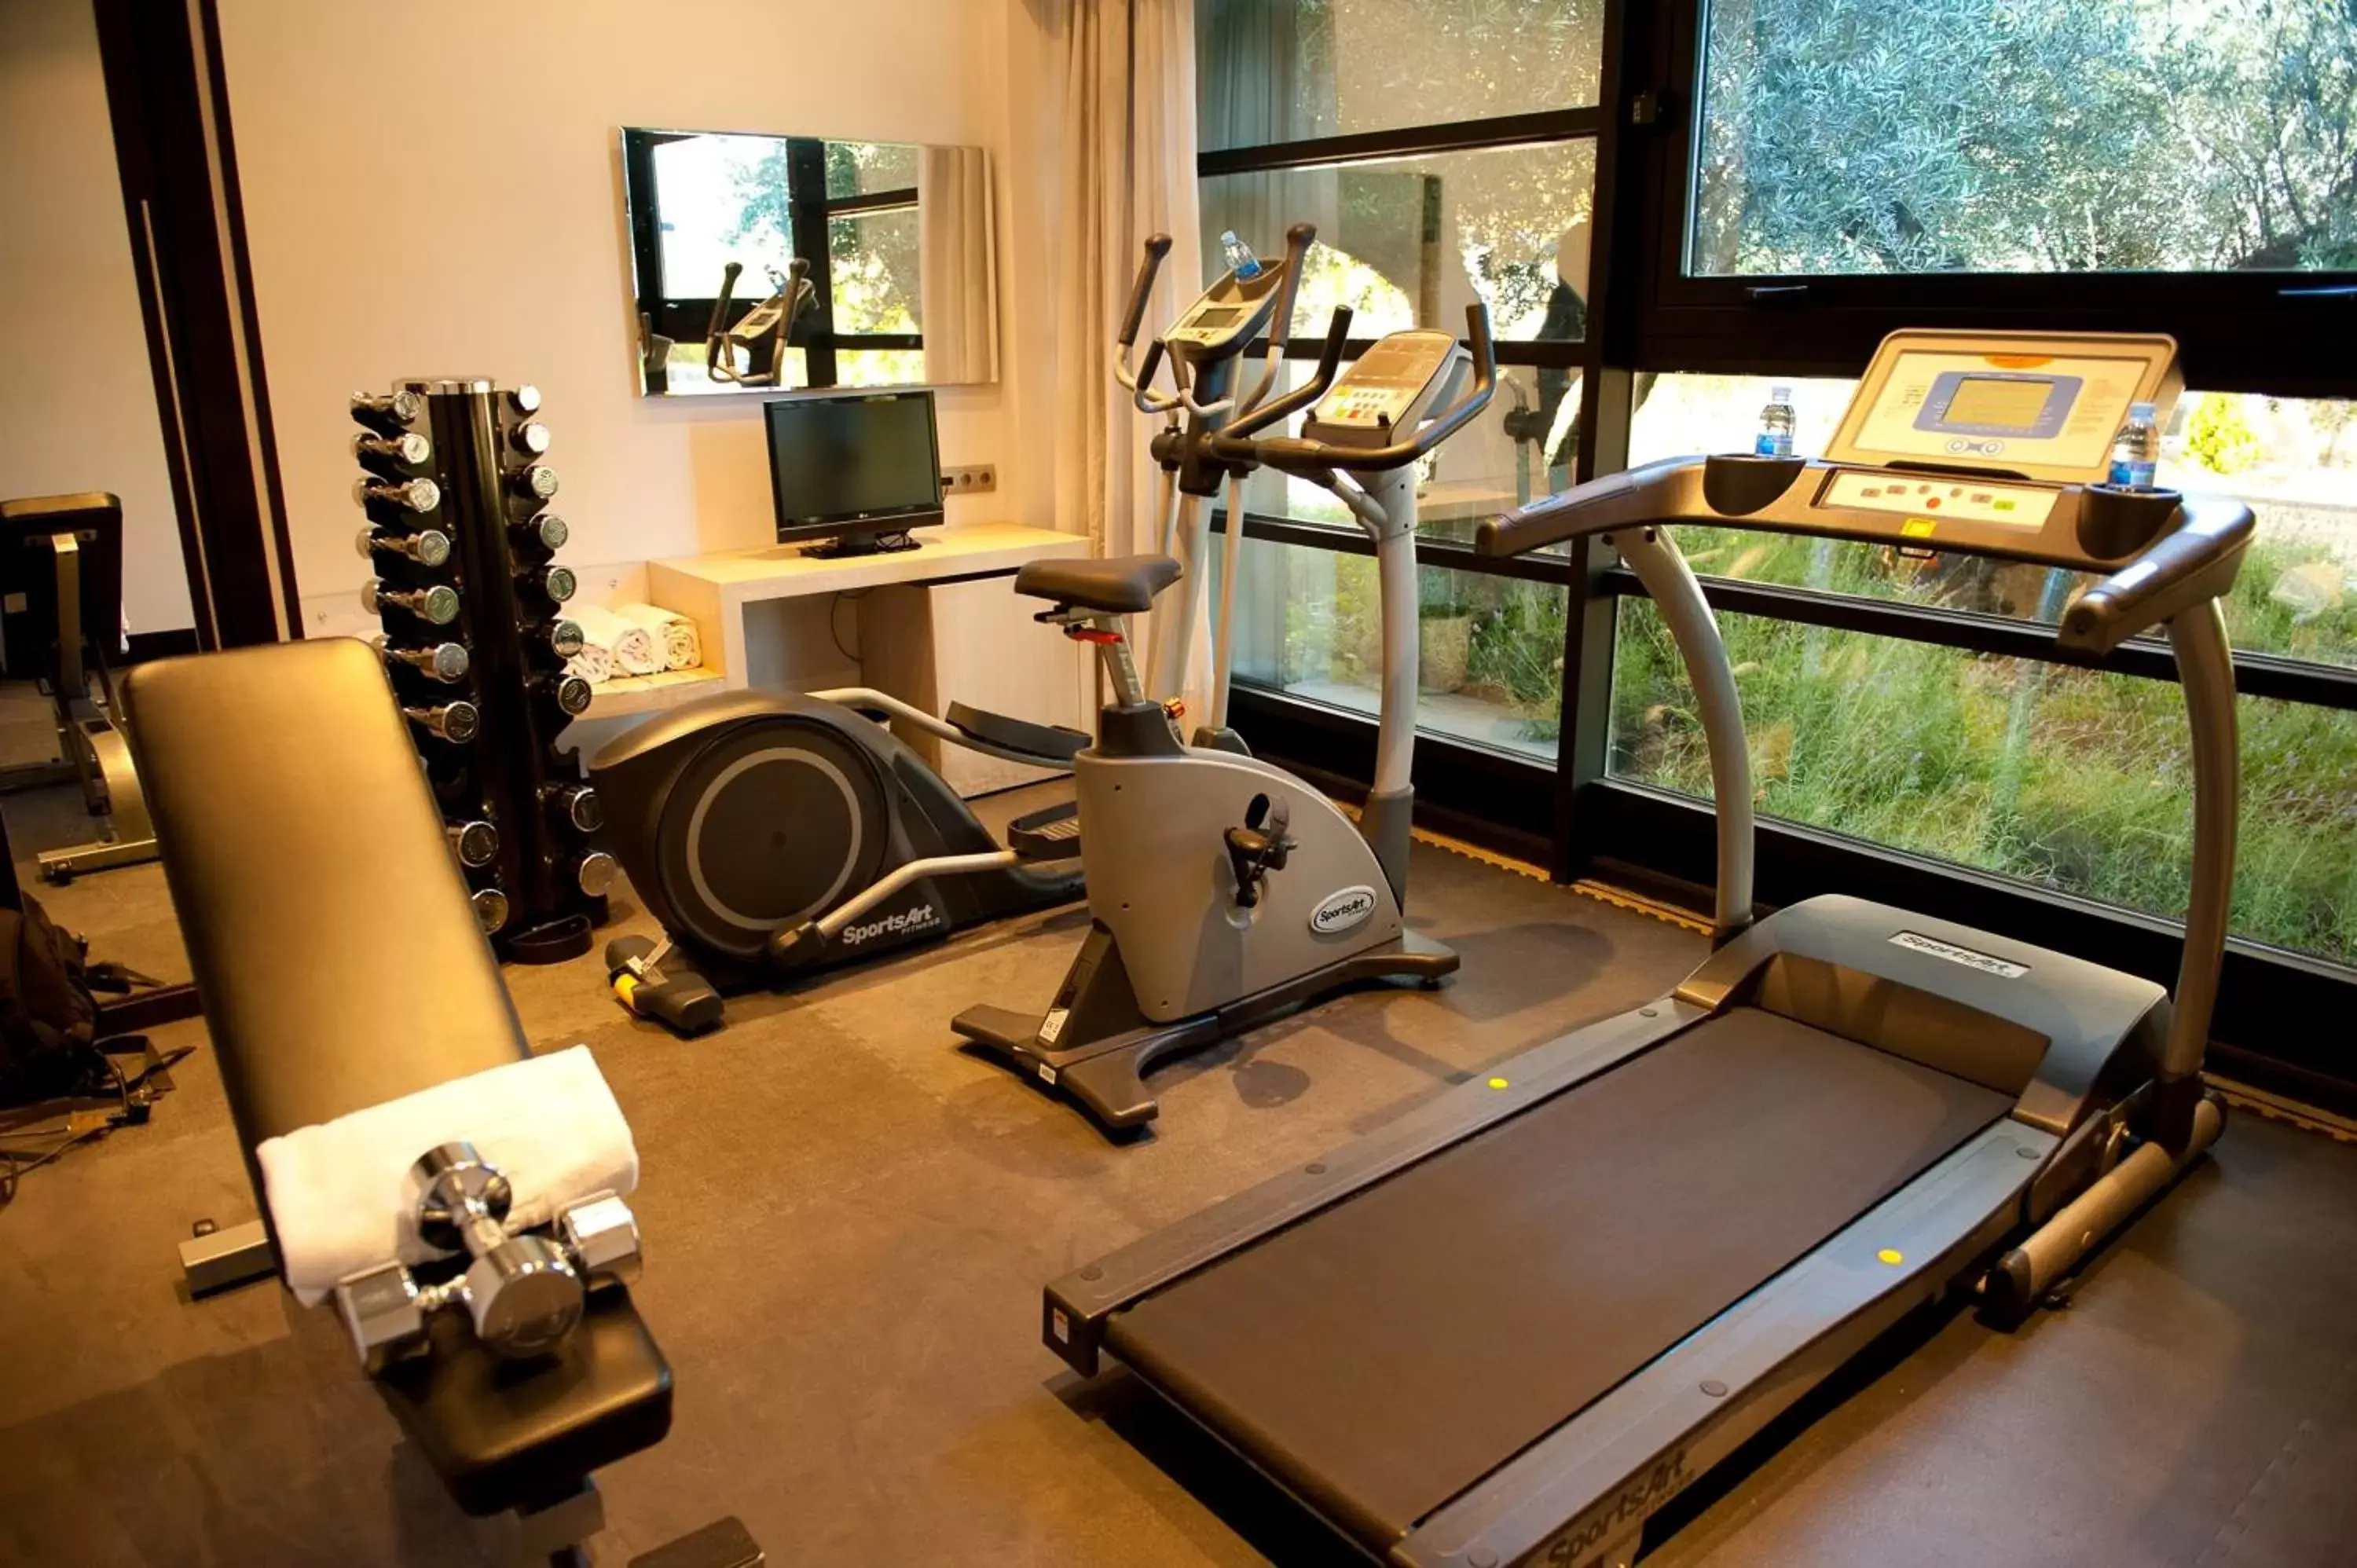 Fitness centre/facilities, Fitness Center/Facilities in Hotel Nuevo Boston